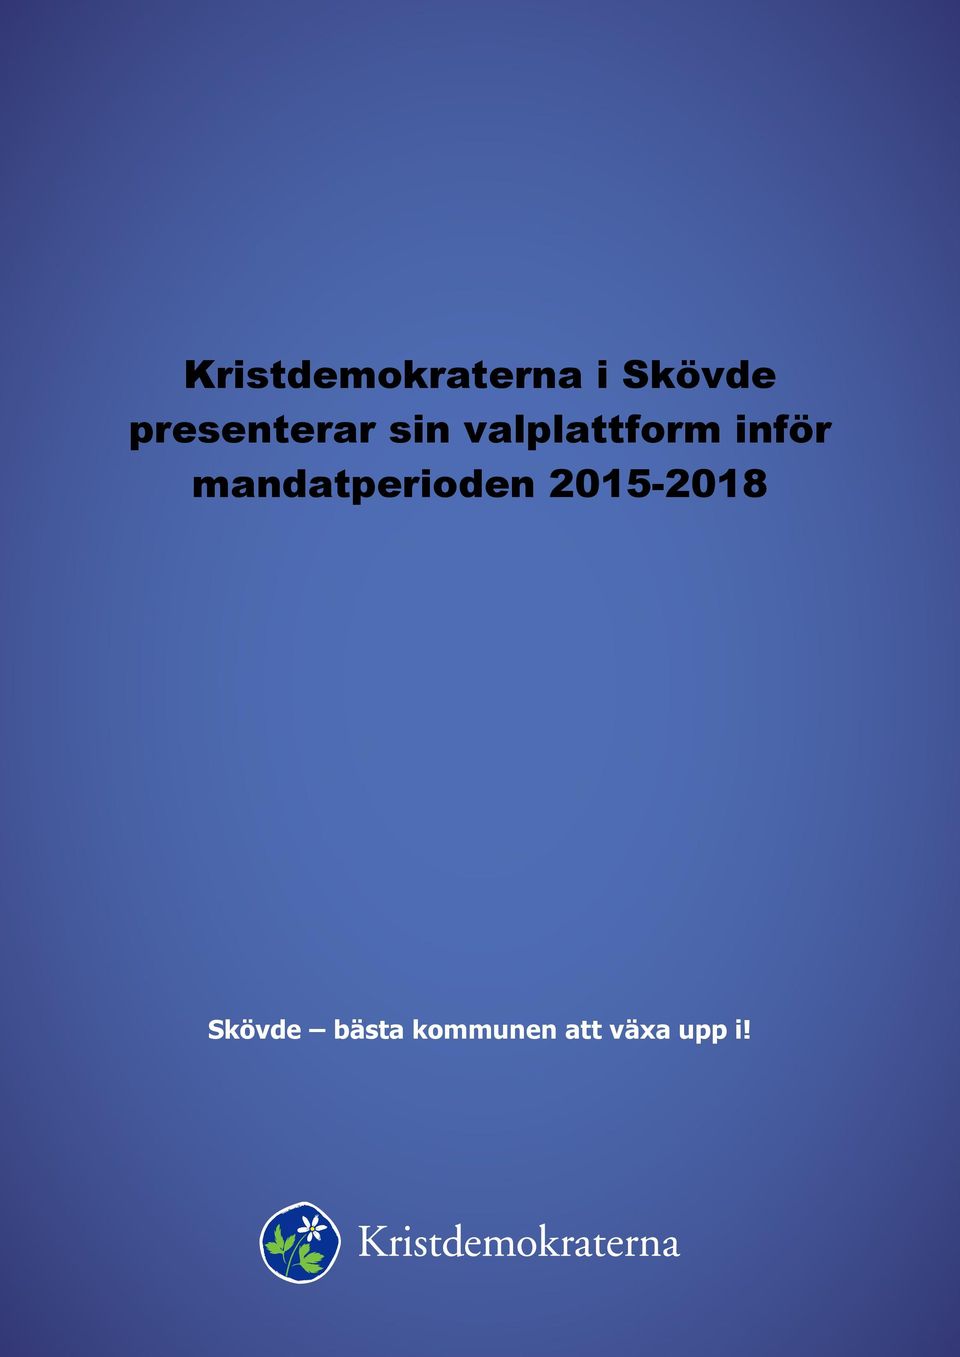 inför mandatperioden 2015-2018